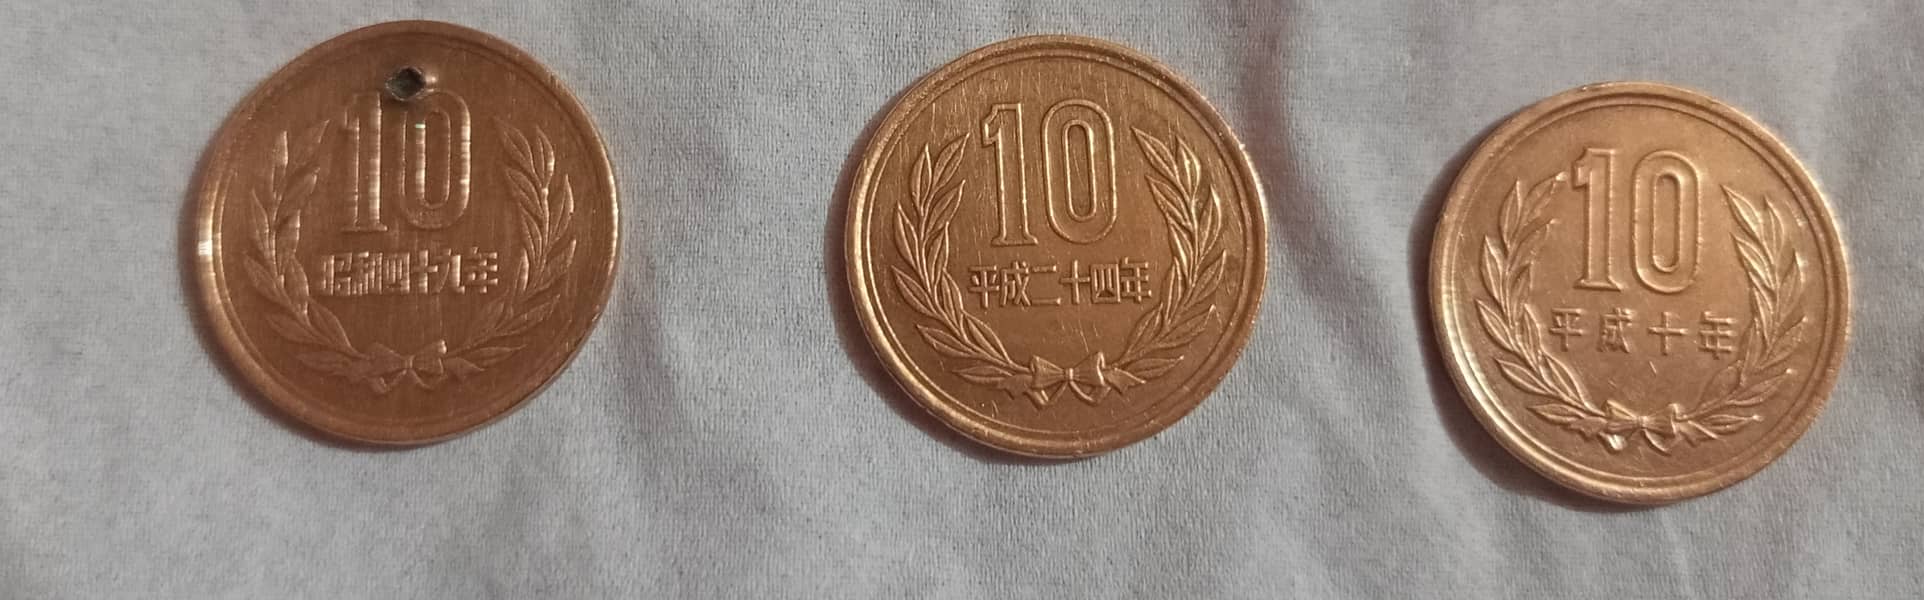 OLD JAPAN COINS: 10 Yen Bronze,50 Yen FLORAL, 100 Yen Beautiful Flower 4